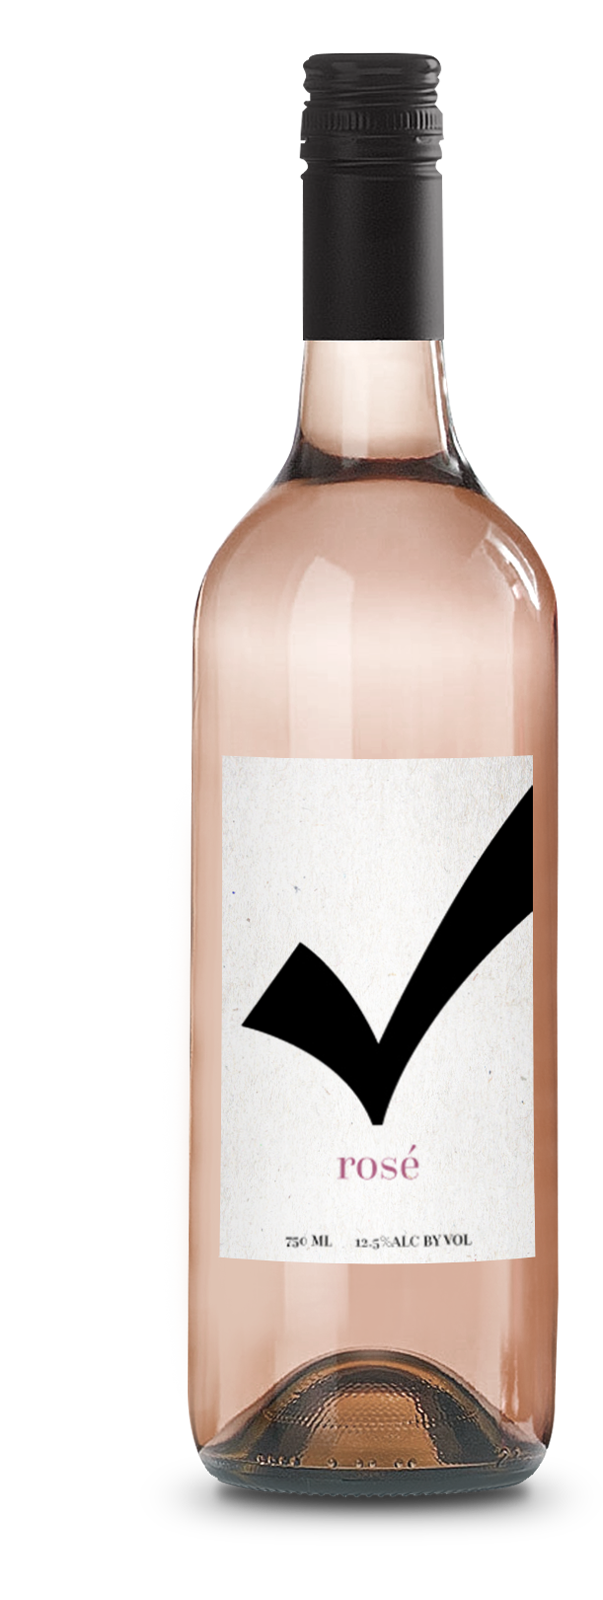 Check Rose Wine - Full Bottle Image